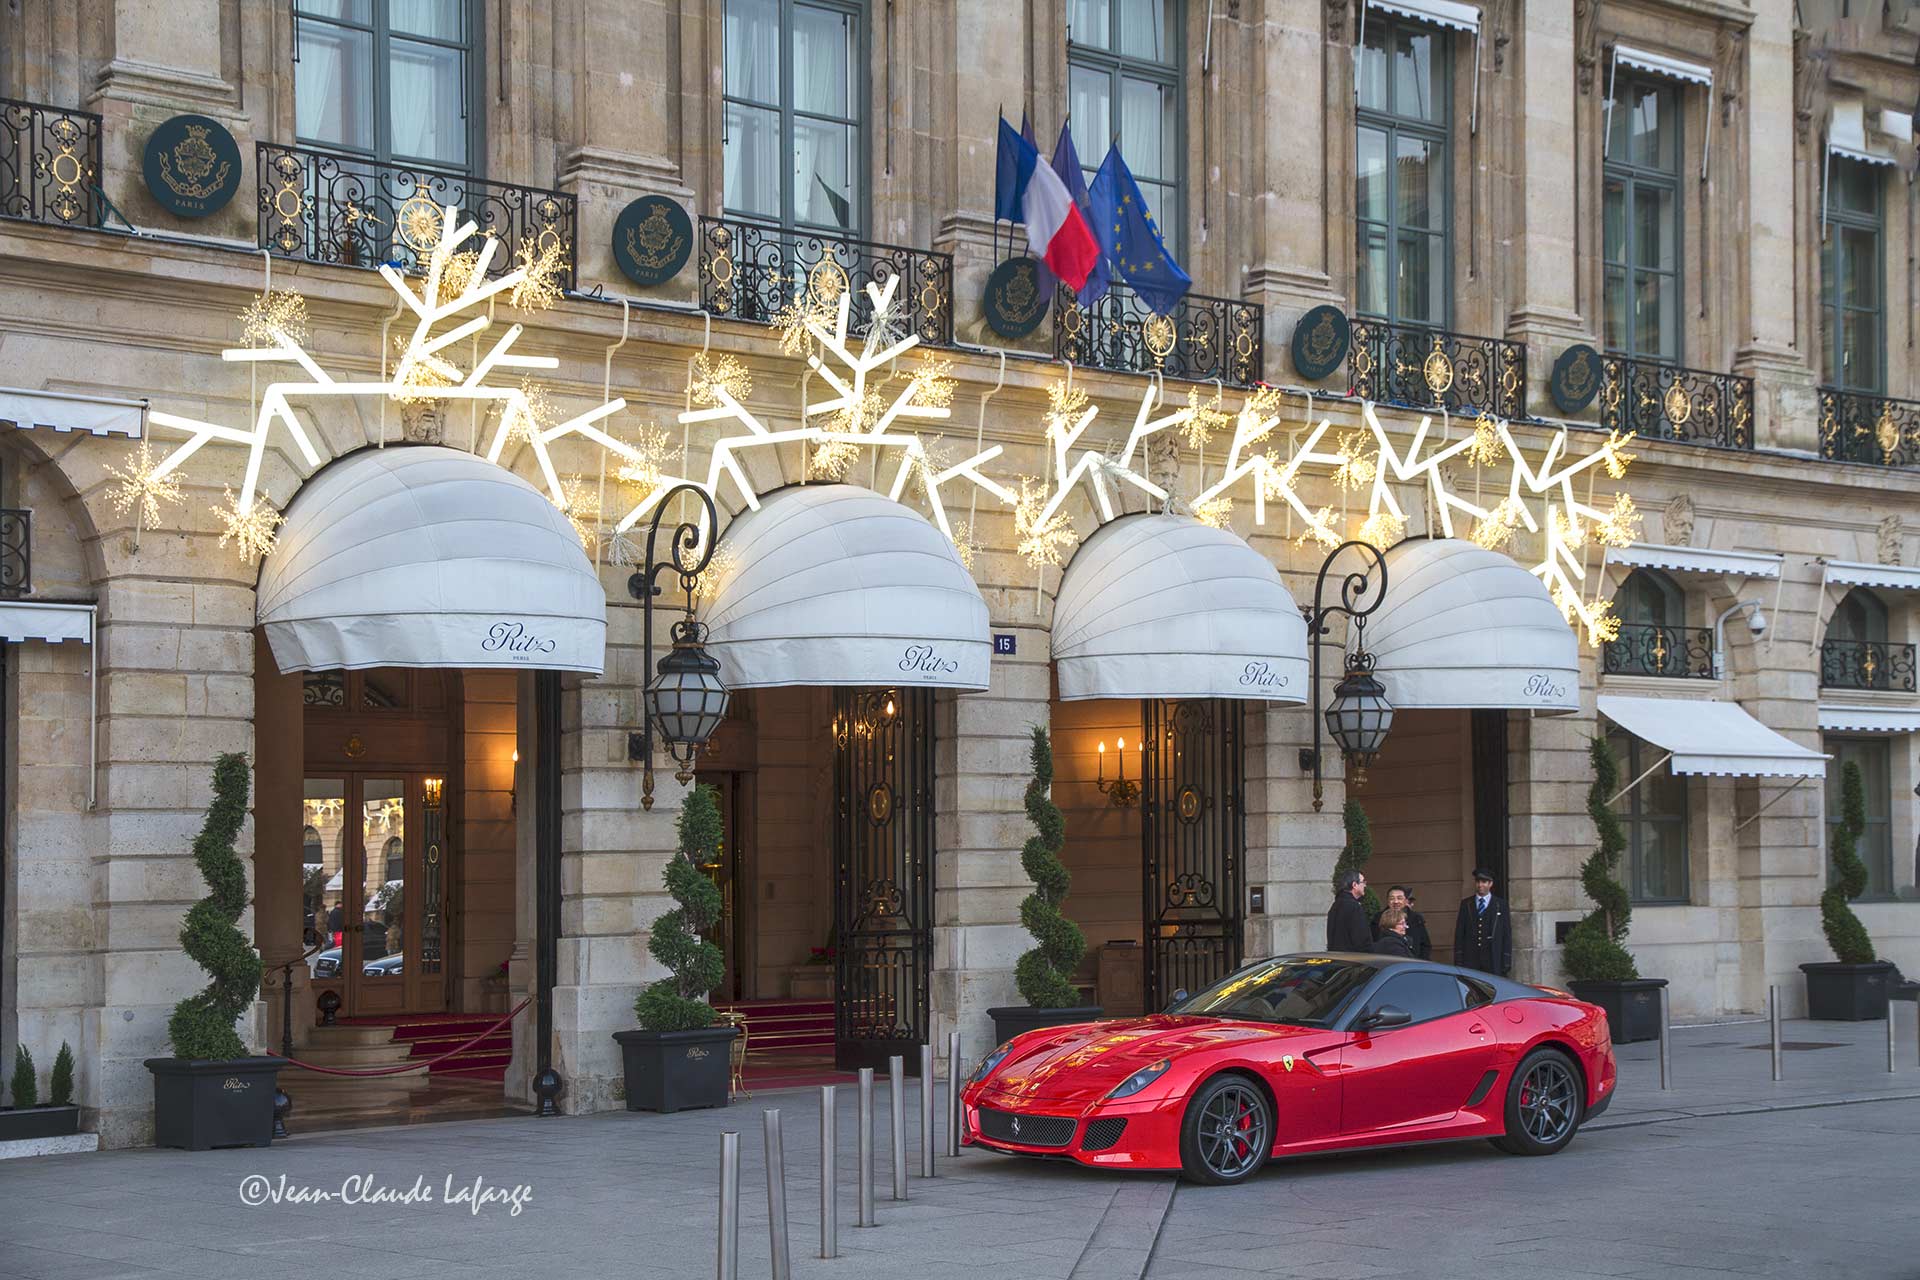 Ferrari sans plaque d'immatriculation devant le Ritz place Vendôme à Paris à Noël.